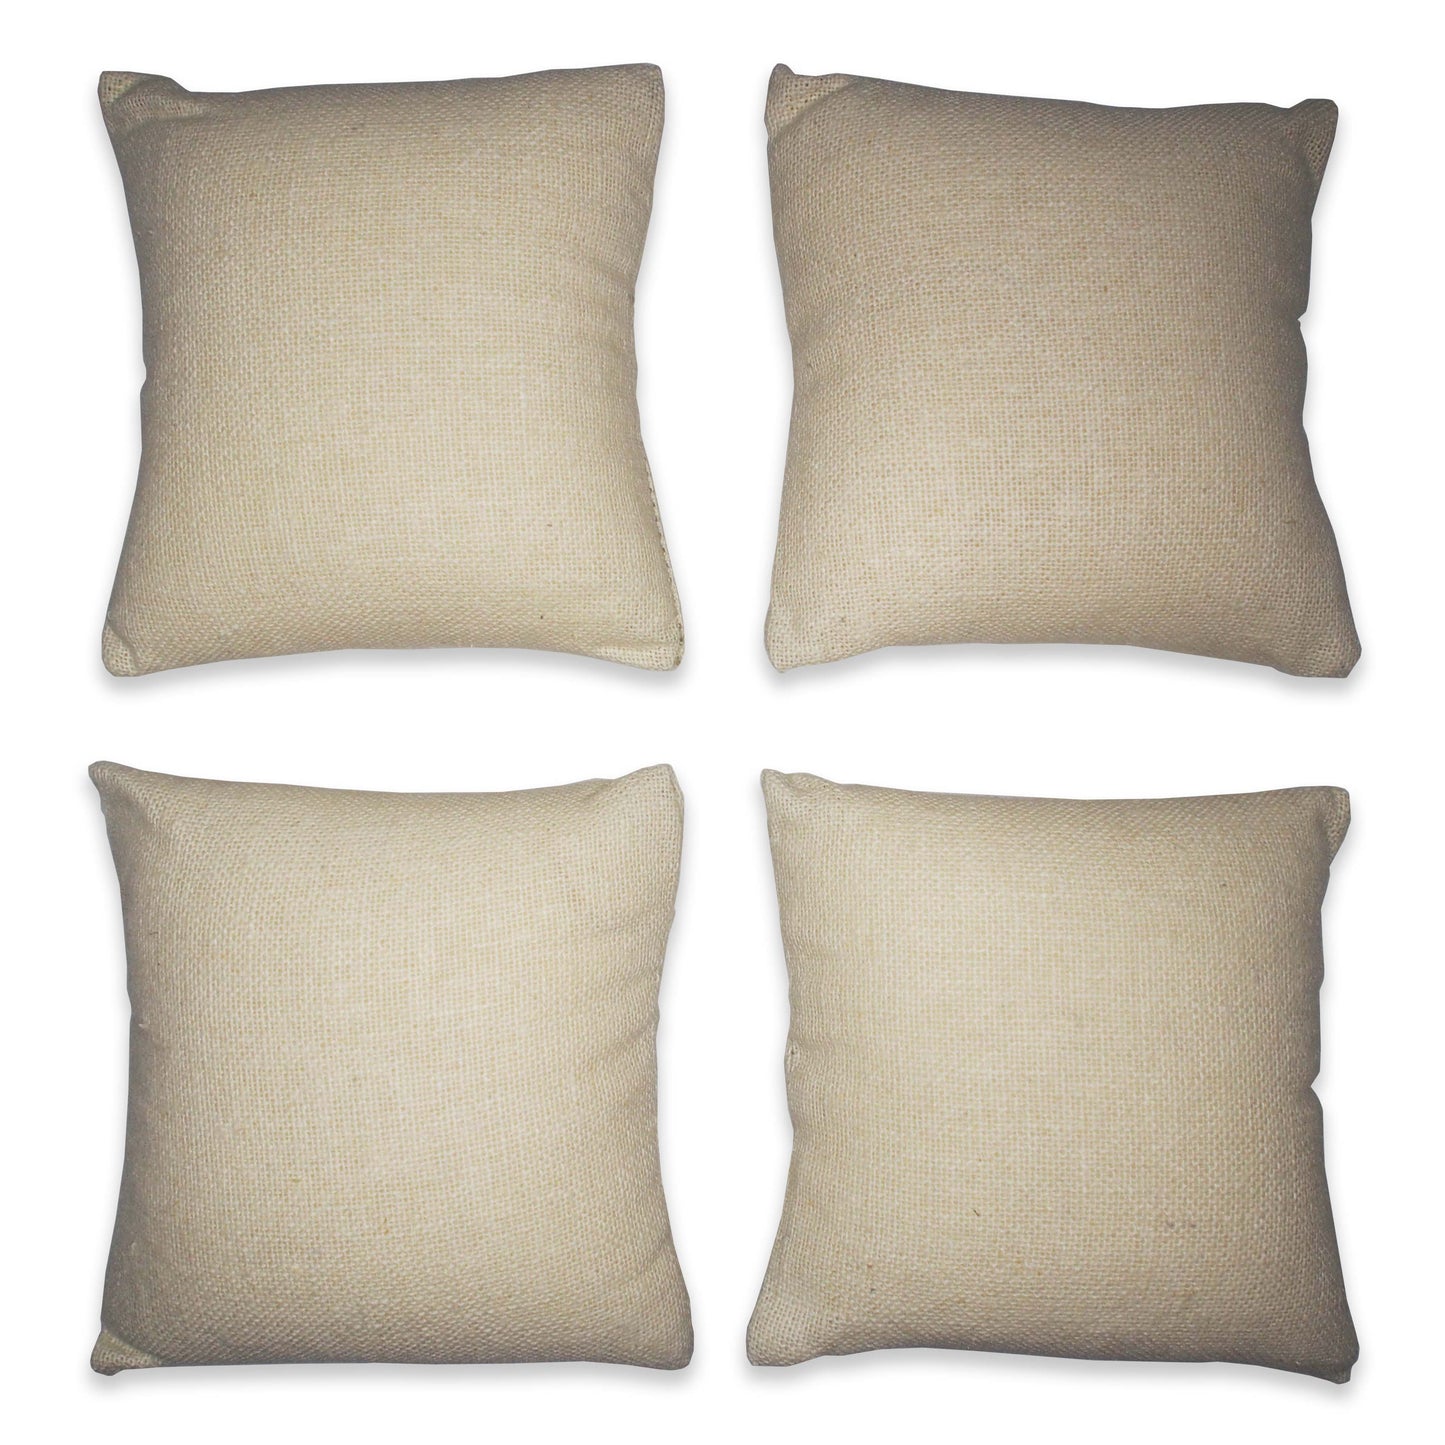 4" Beige Linen Pillow Displays